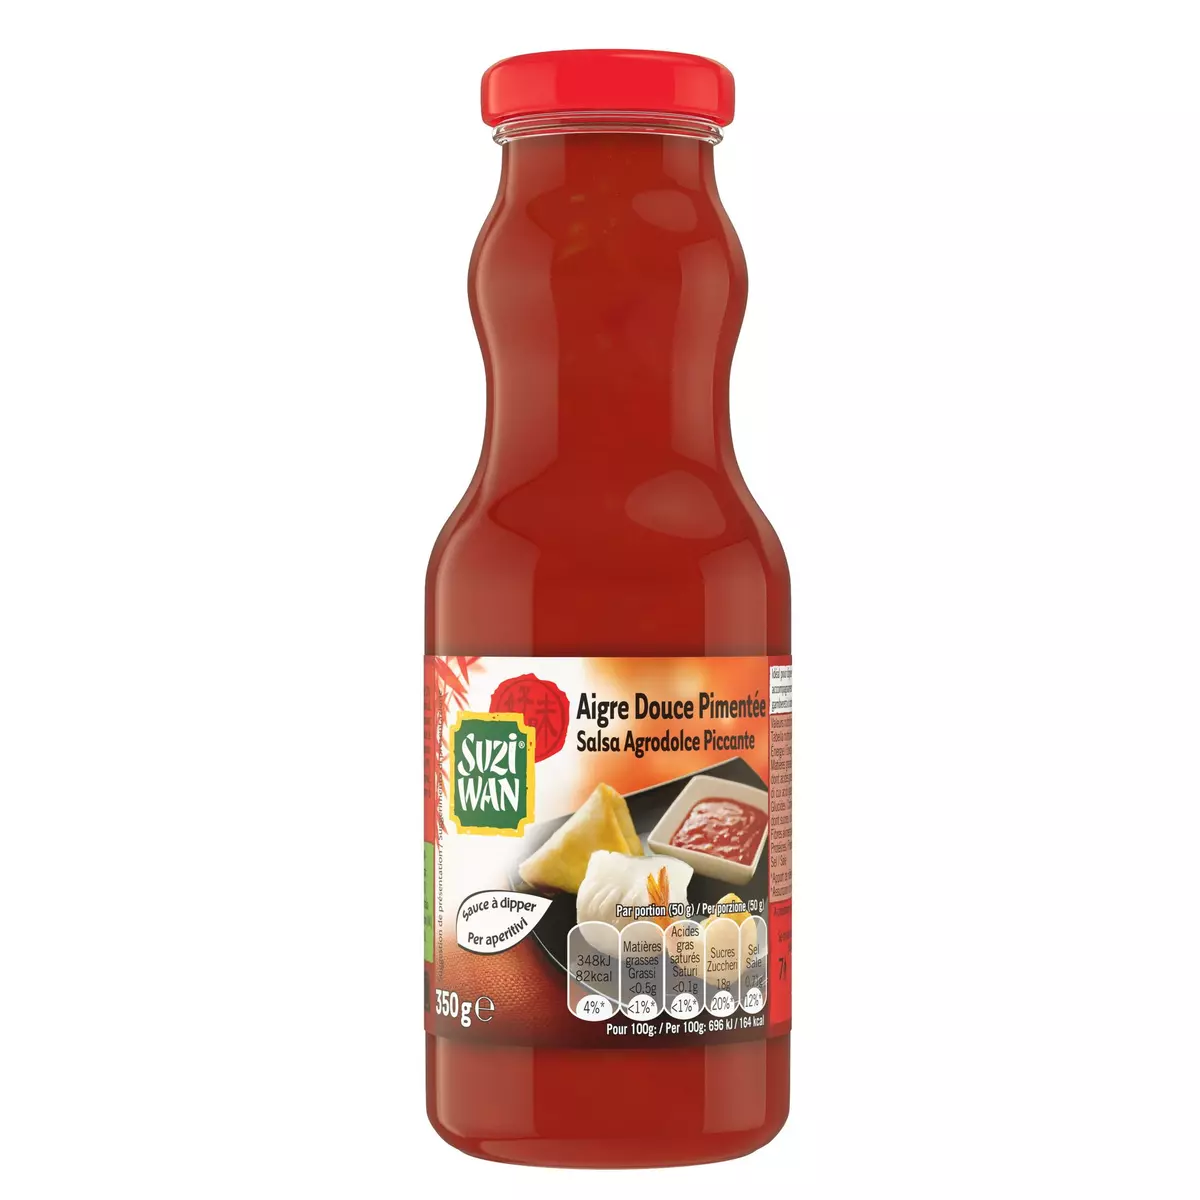 SUZI WAN Sauce aigre douce pimentée à dipper 350g